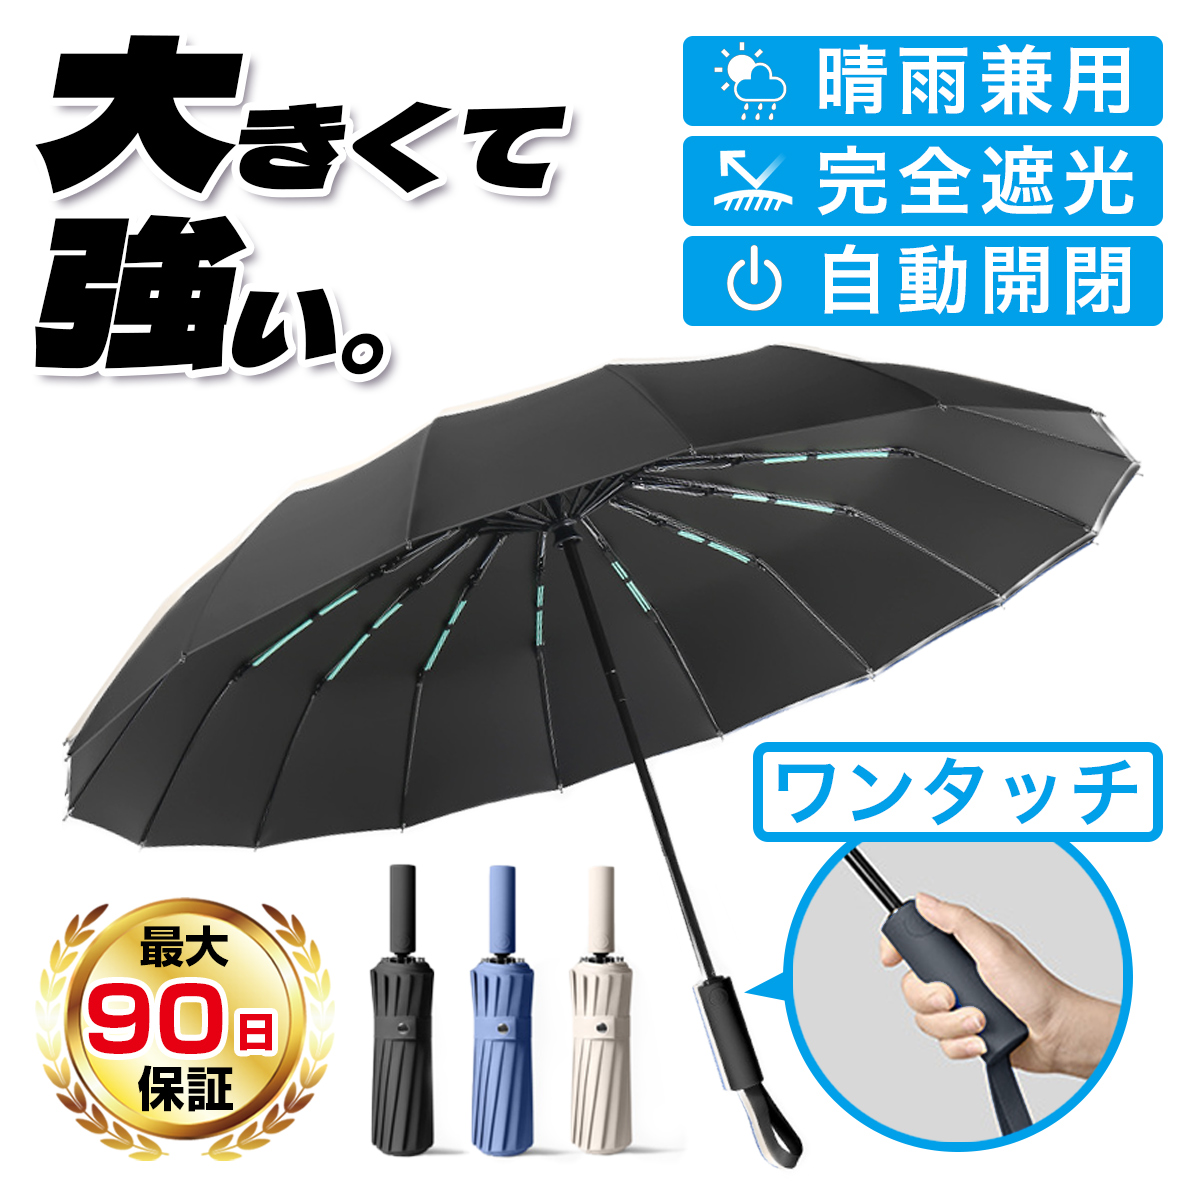 折りたたみ傘 傘 メンズ 自動開閉 大きい 折り畳み傘 ワンタッチ 晴雨兼用 丈夫 雨傘 日傘 風に強い 16本骨 頑丈 耐風傘 カバー付き 強風対応